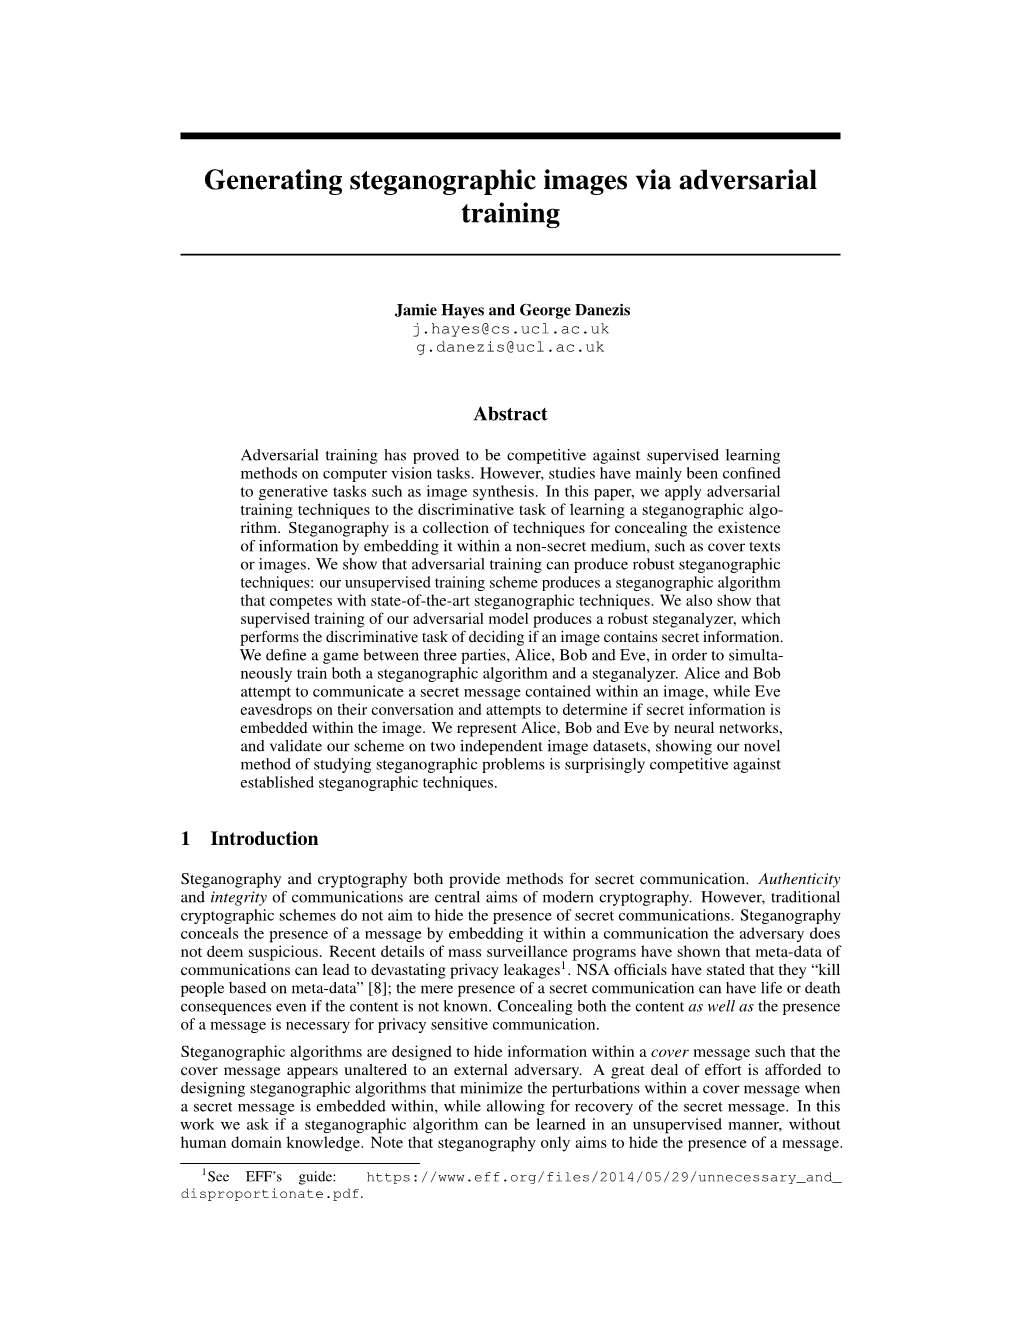 Generating Steganographic Images Via Adversarial Training